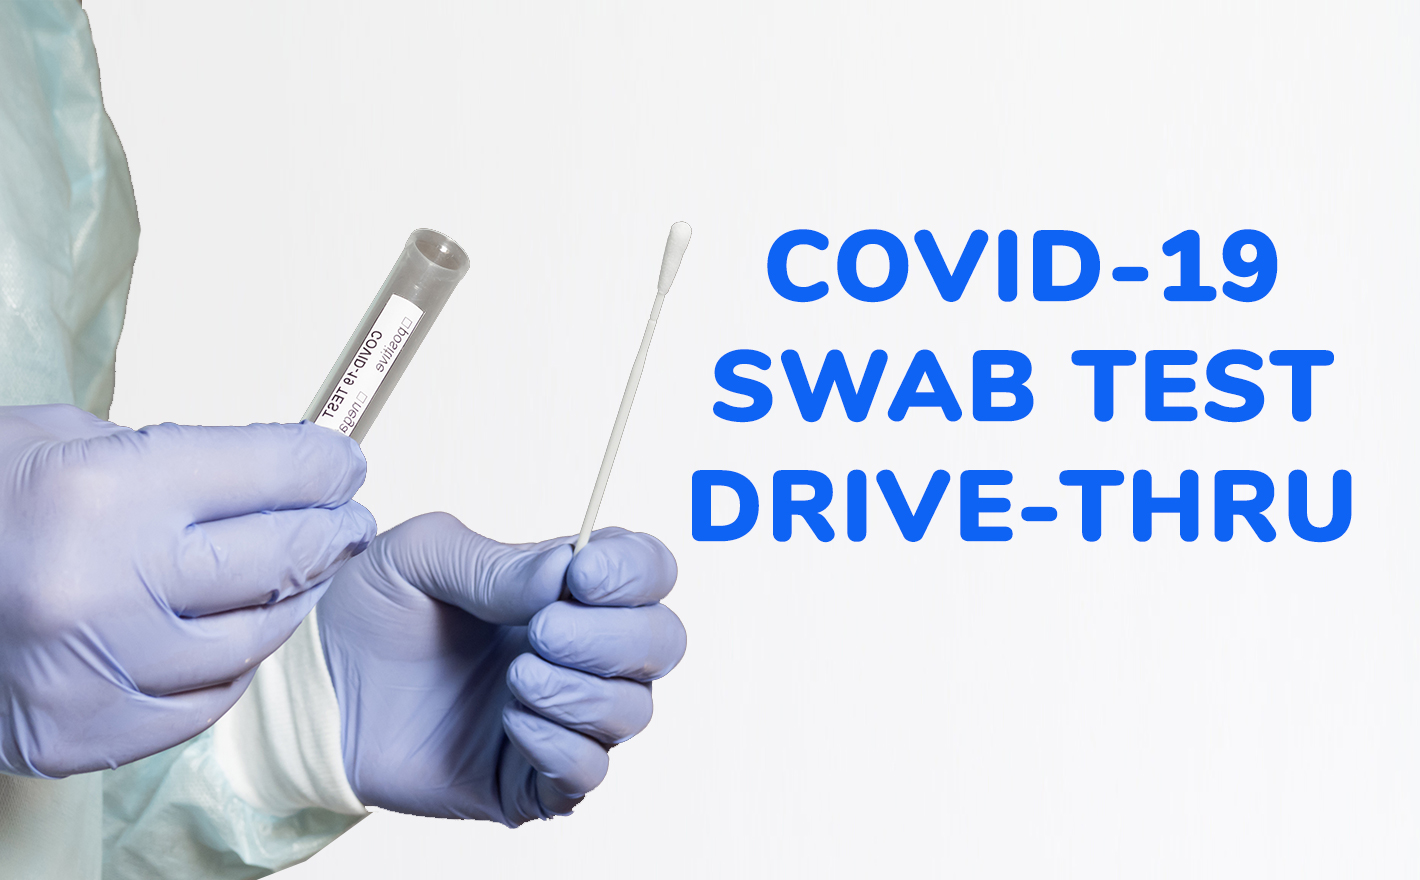 COVID-19 swab test drive thru service